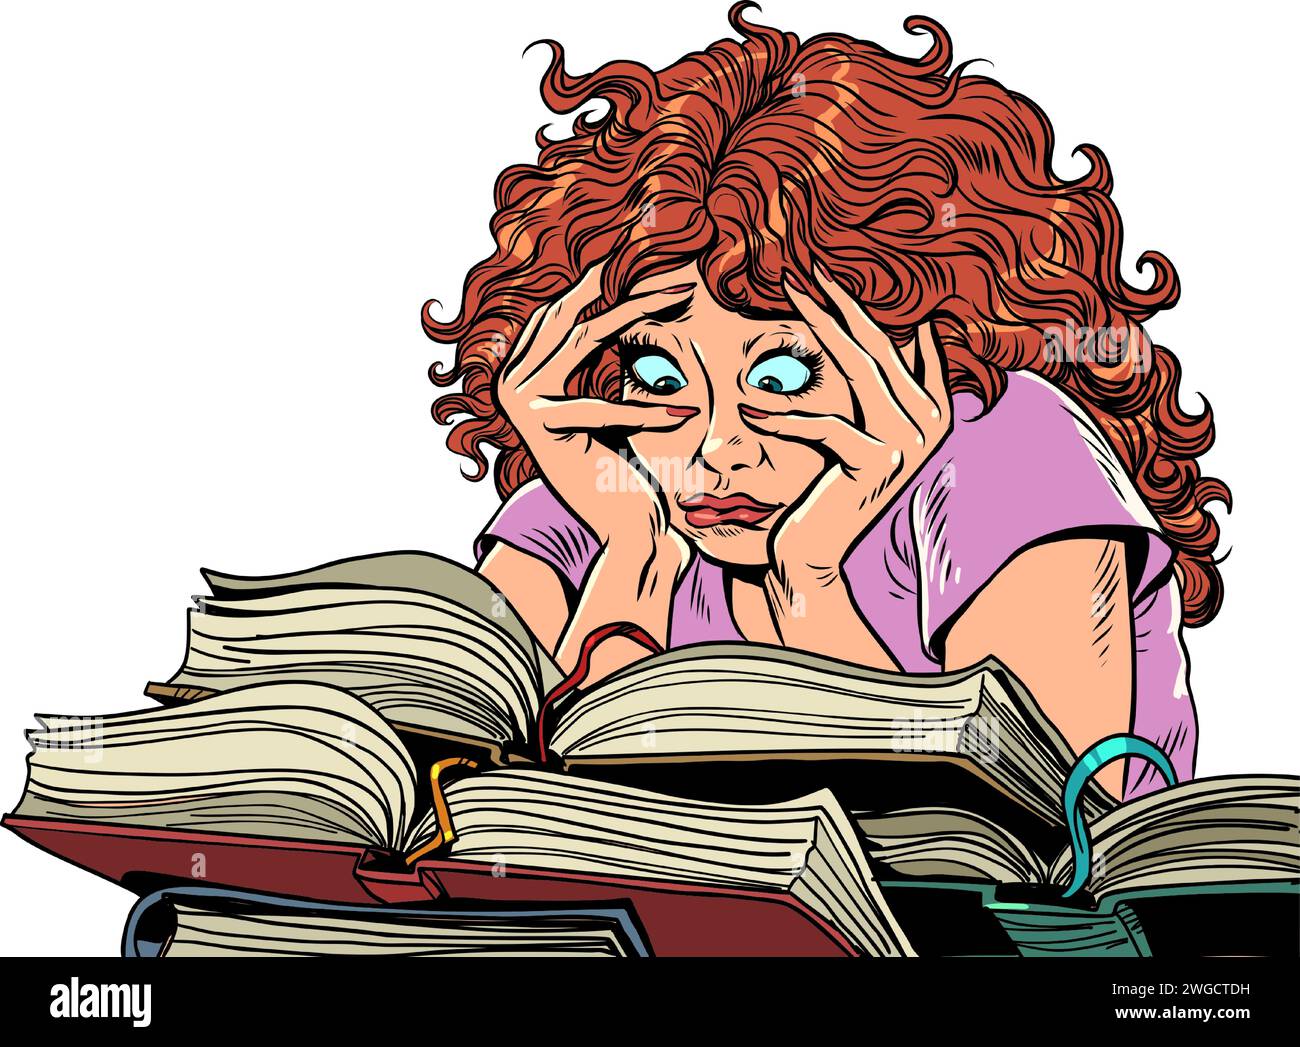 Eine schwierige Sitzung quält die Schülerin und ihre Gesundheit. Eine Frau unter einer riesigen Anzahl von Büchern. Buchhandlung mit einer riesigen Auswahl. Comic-Comic-Pop-Art Stock Vektor